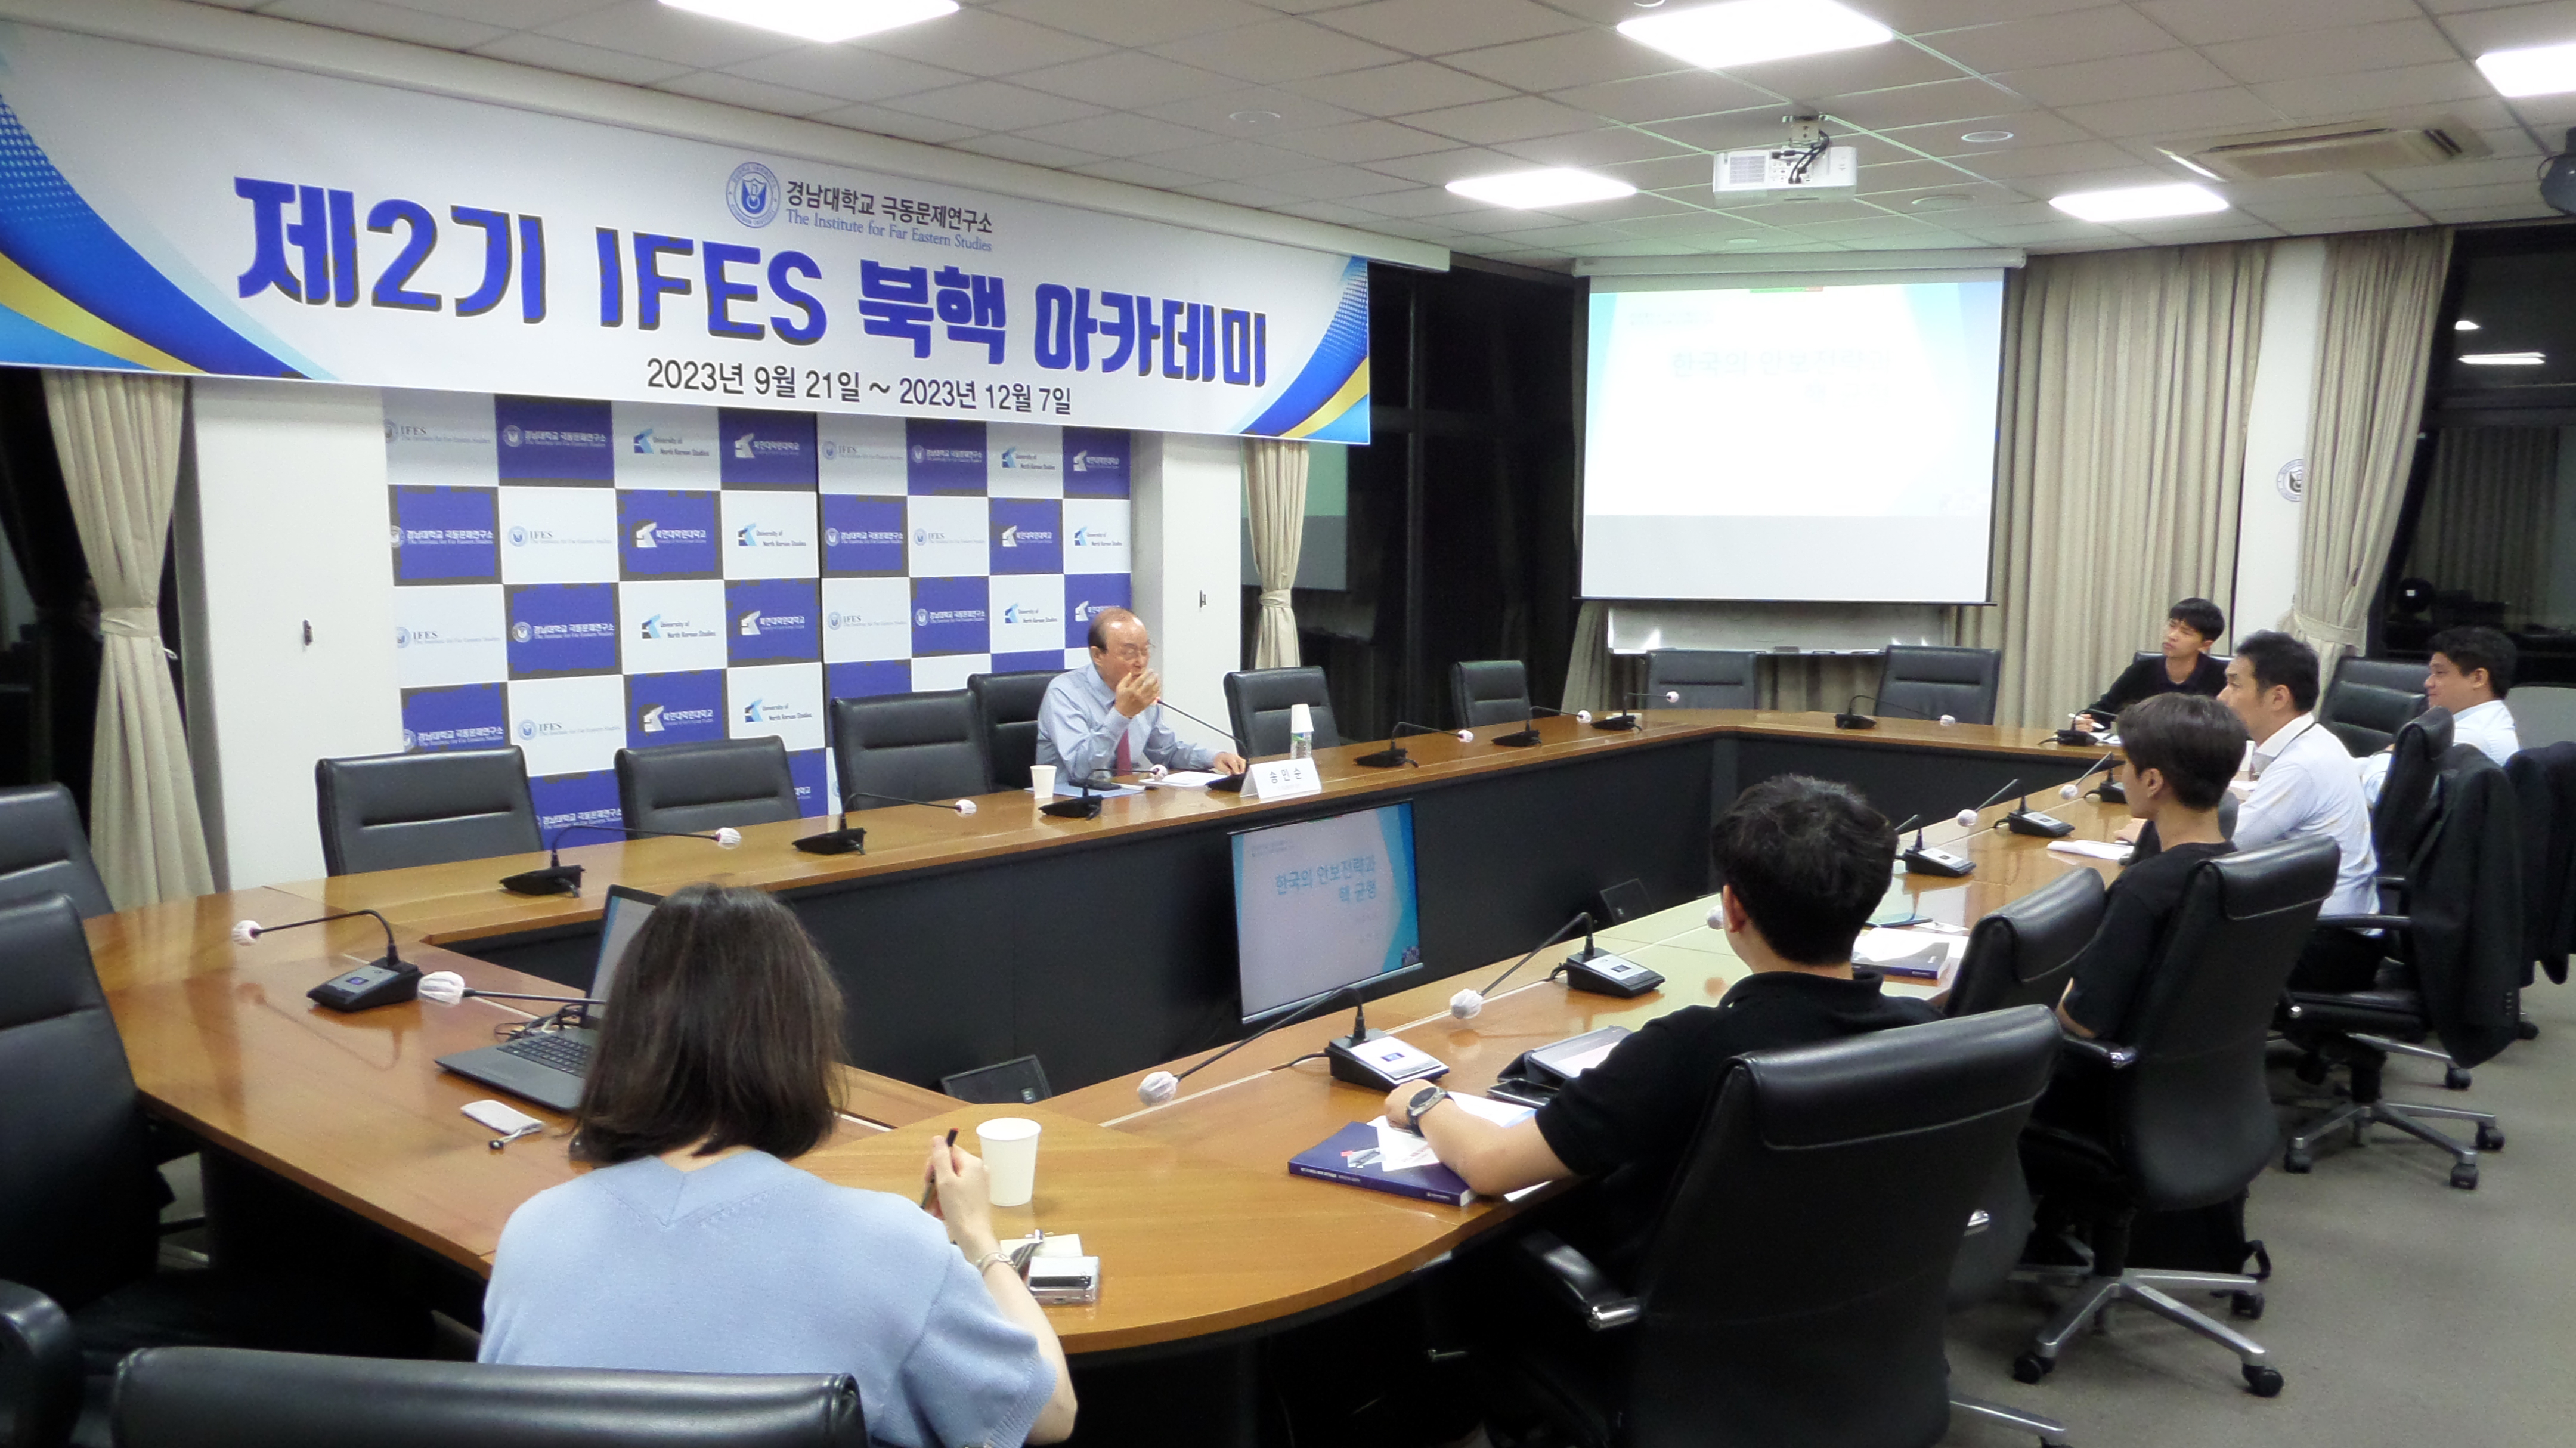 제2기 IFES 북핵 아카데미 개강 대표이미지